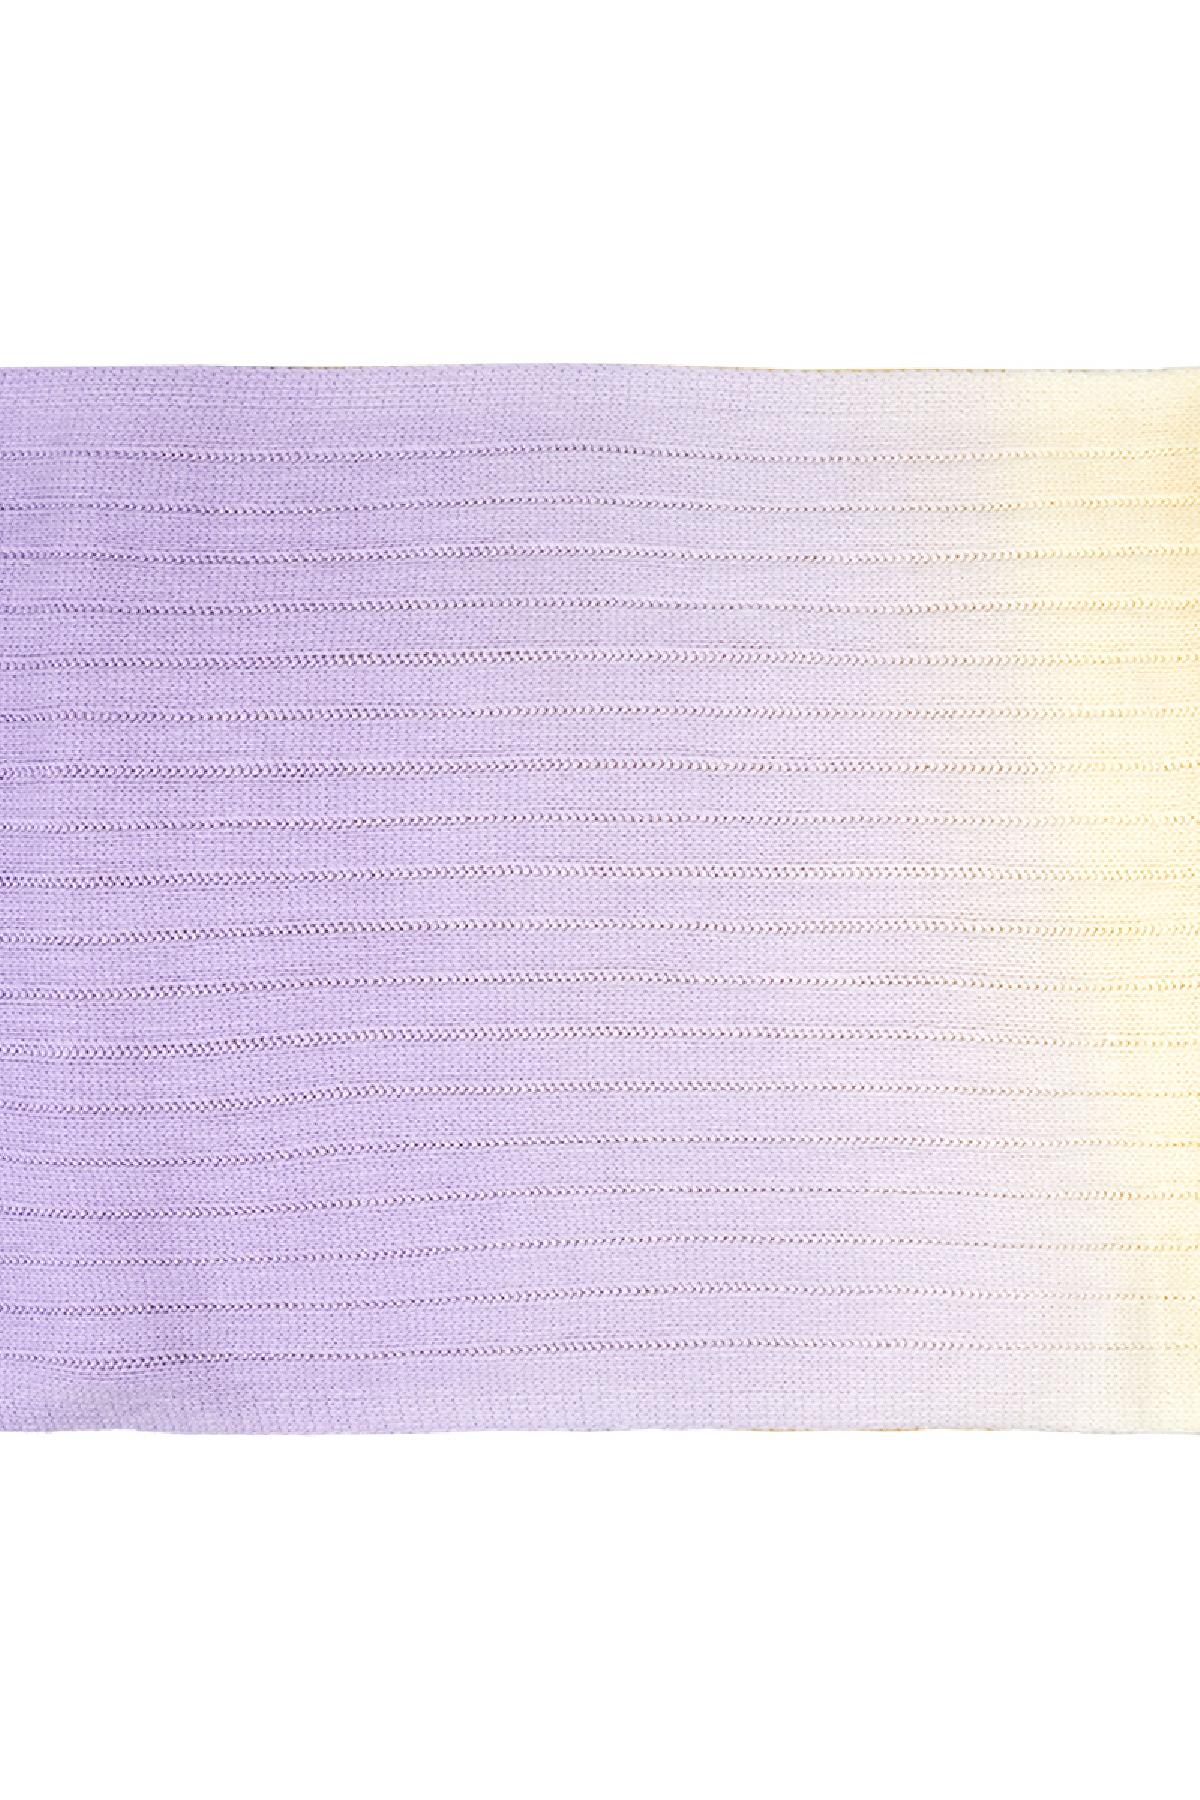 Tie dye sjaal Paars Acryl h5 Afbeelding3